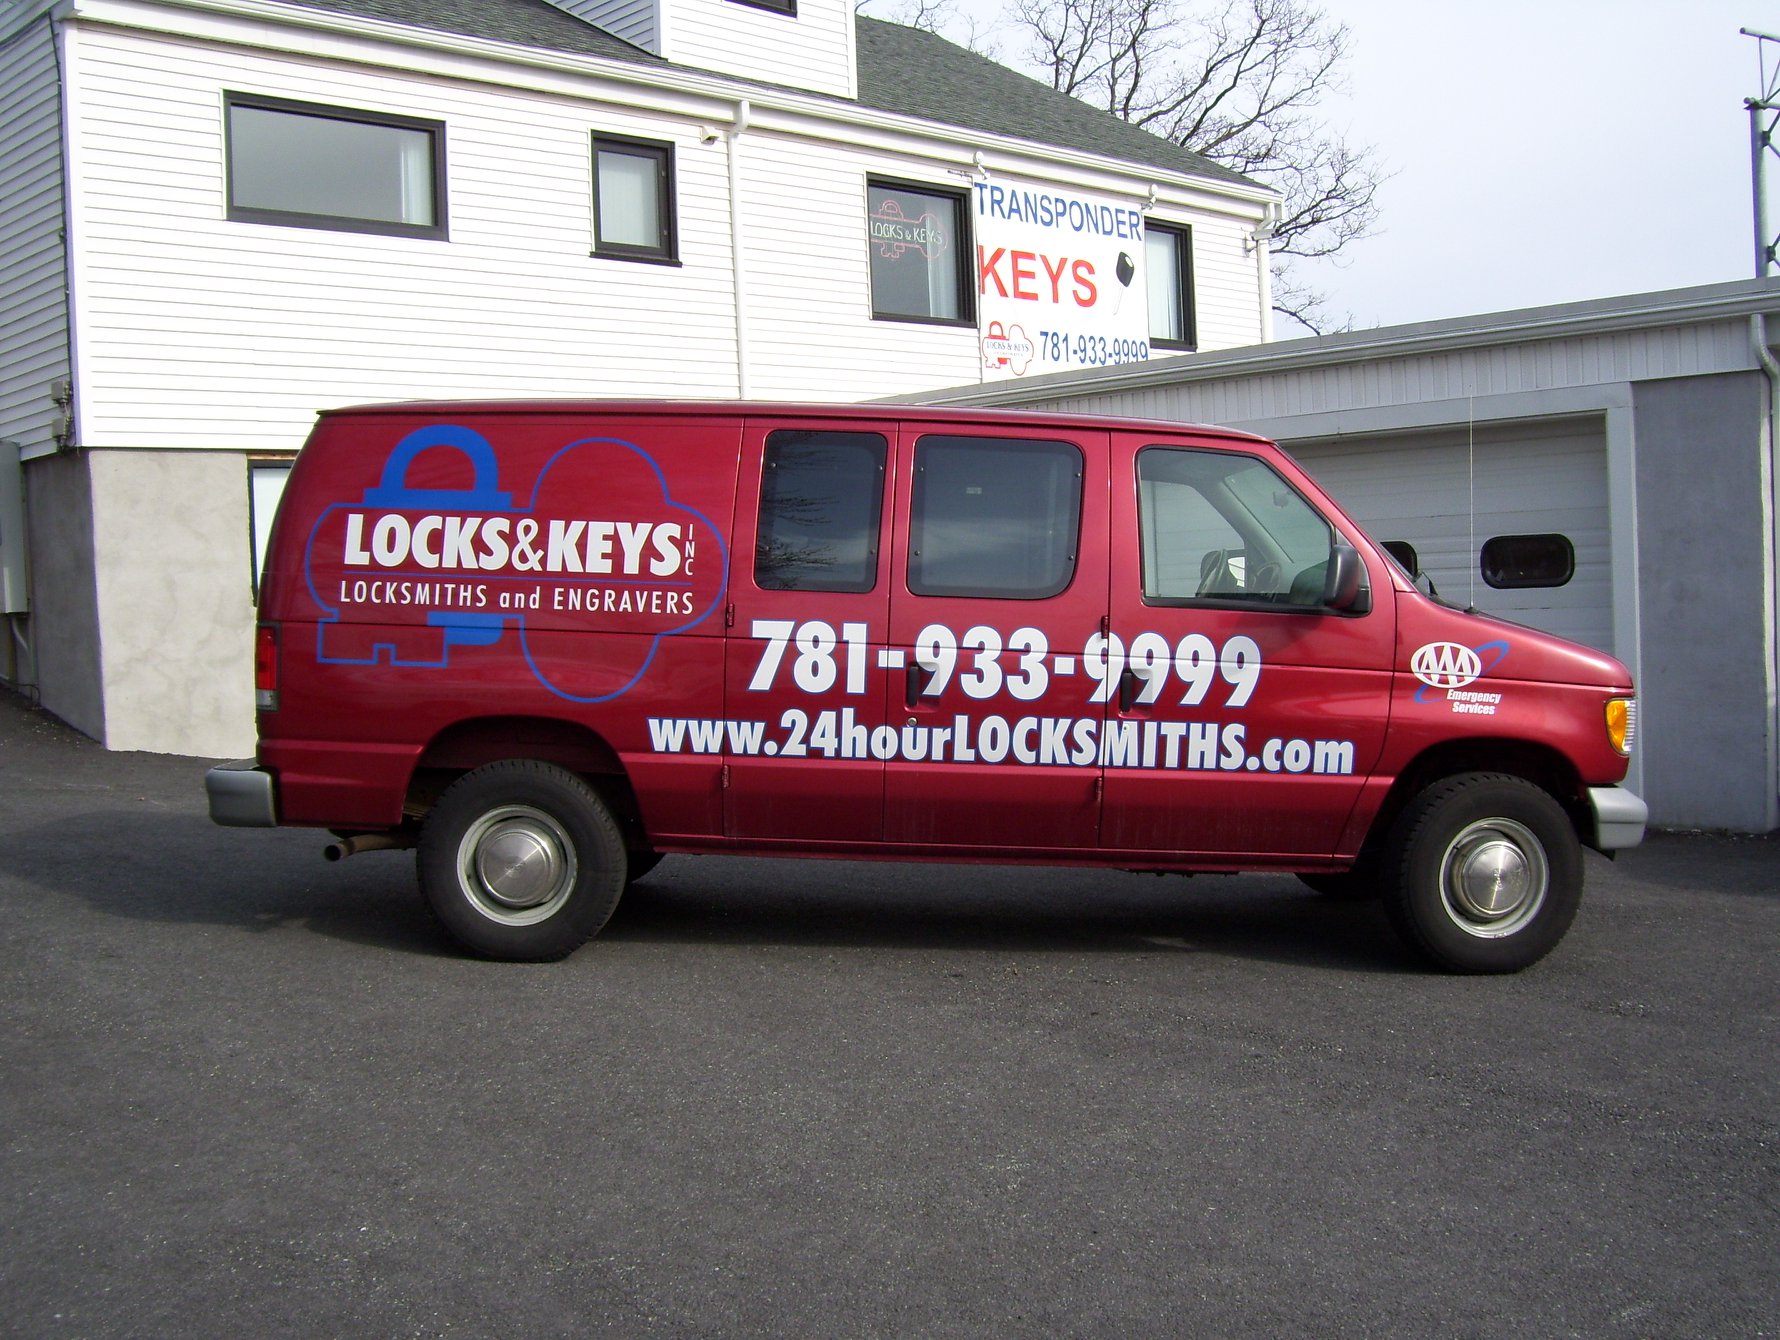 Locks & Keys Inc. - Emergency Services - Stoneham MA locksmith